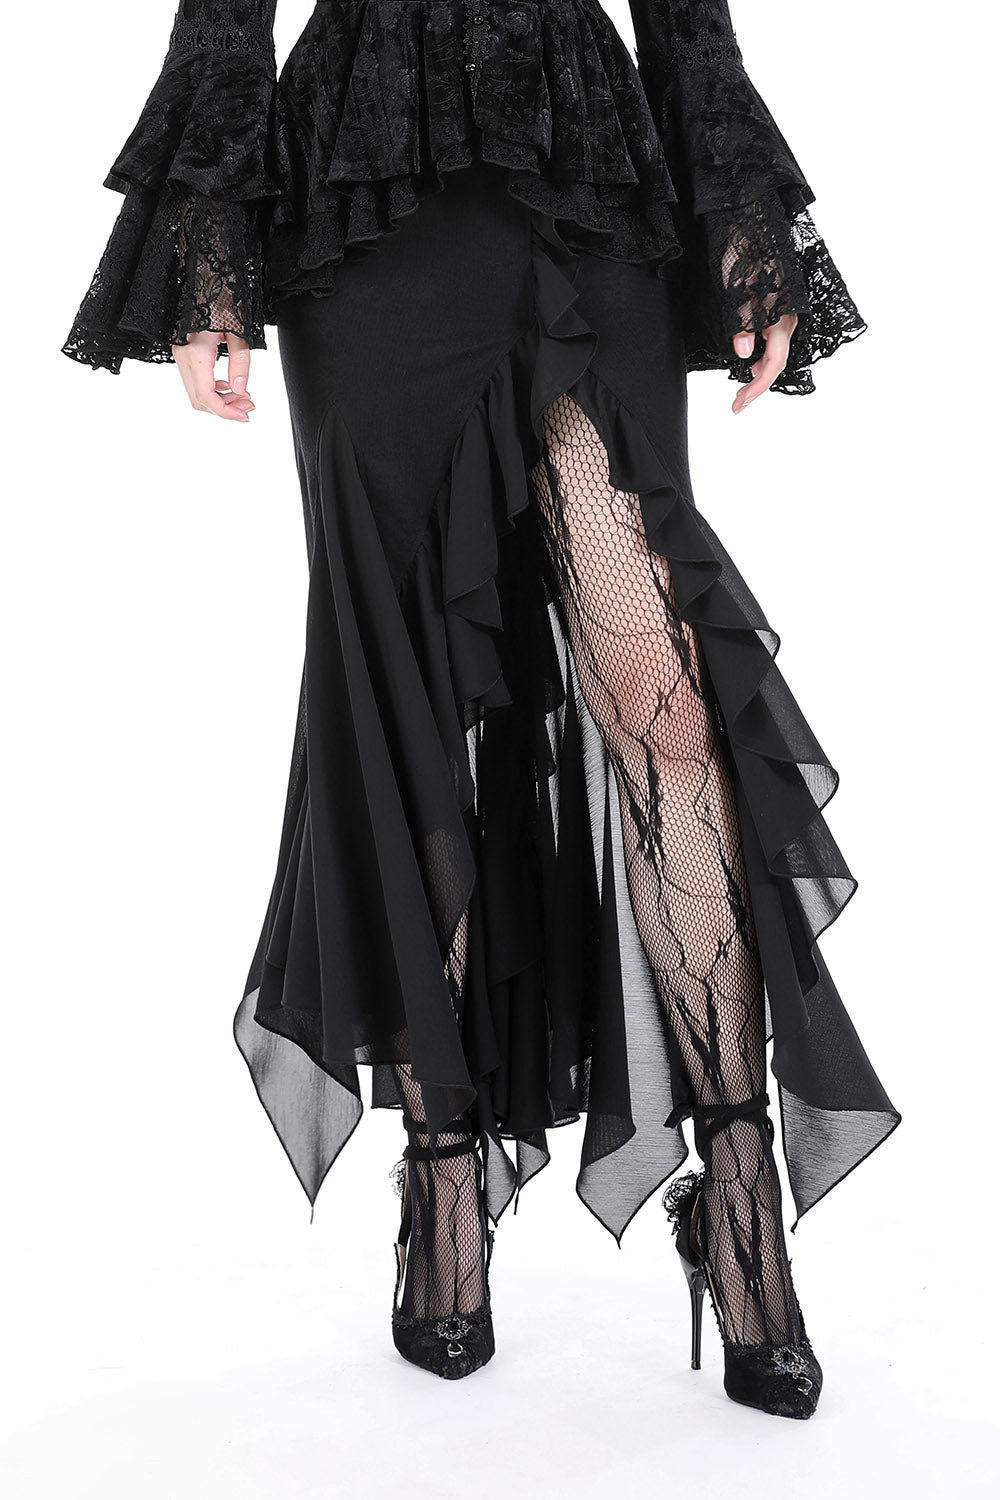 ruffled gothic skirt